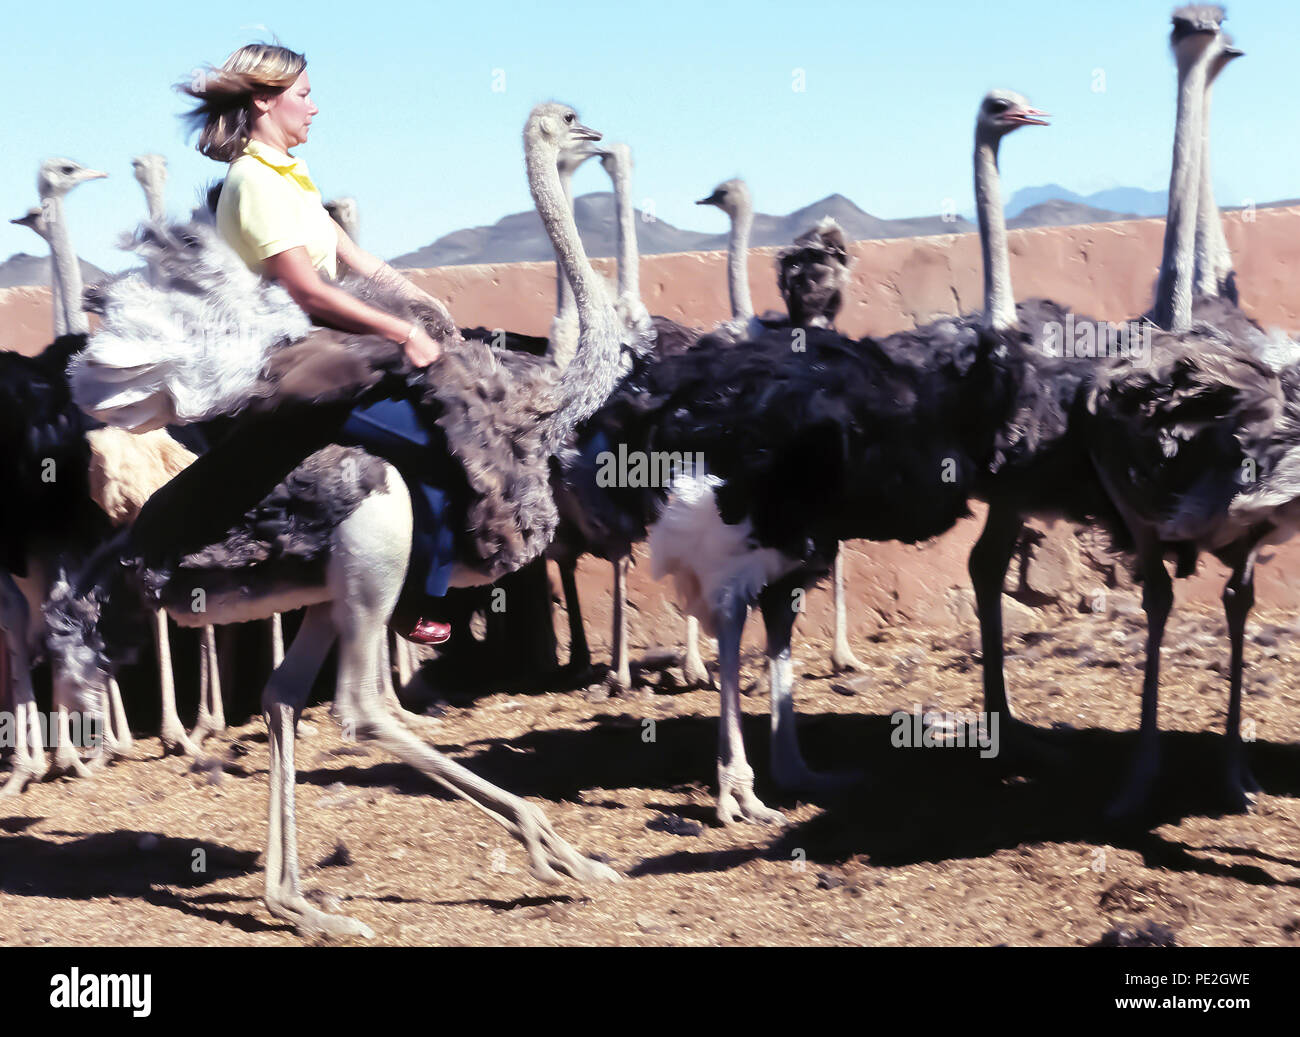 Eine weibliche Touristen hält fest an den Flügeln der Strauß (Struthio camelus), wie sie reitet es Bareback inmitten einer Herde der größten Vögel der Welt bei einer Straußenfarm in der Nähe von Oudtshoorn, Südafrika. Solche Betriebe in den späten 1800er und frühen 1900er Jahre, als die ausgefallenen Federn dieser flugunfähige Vögel in der Nachfrage, high-fashion Zubehör für wohlhabende Frauen waren, blühte. Heute ist die Bauernhöfe sind Sehenswürdigkeiten bietet dem Besucher die Möglichkeit, die schnell laufenden Tiere zu reiten und auch auf Ihre riesige Eier essen. Stockfoto